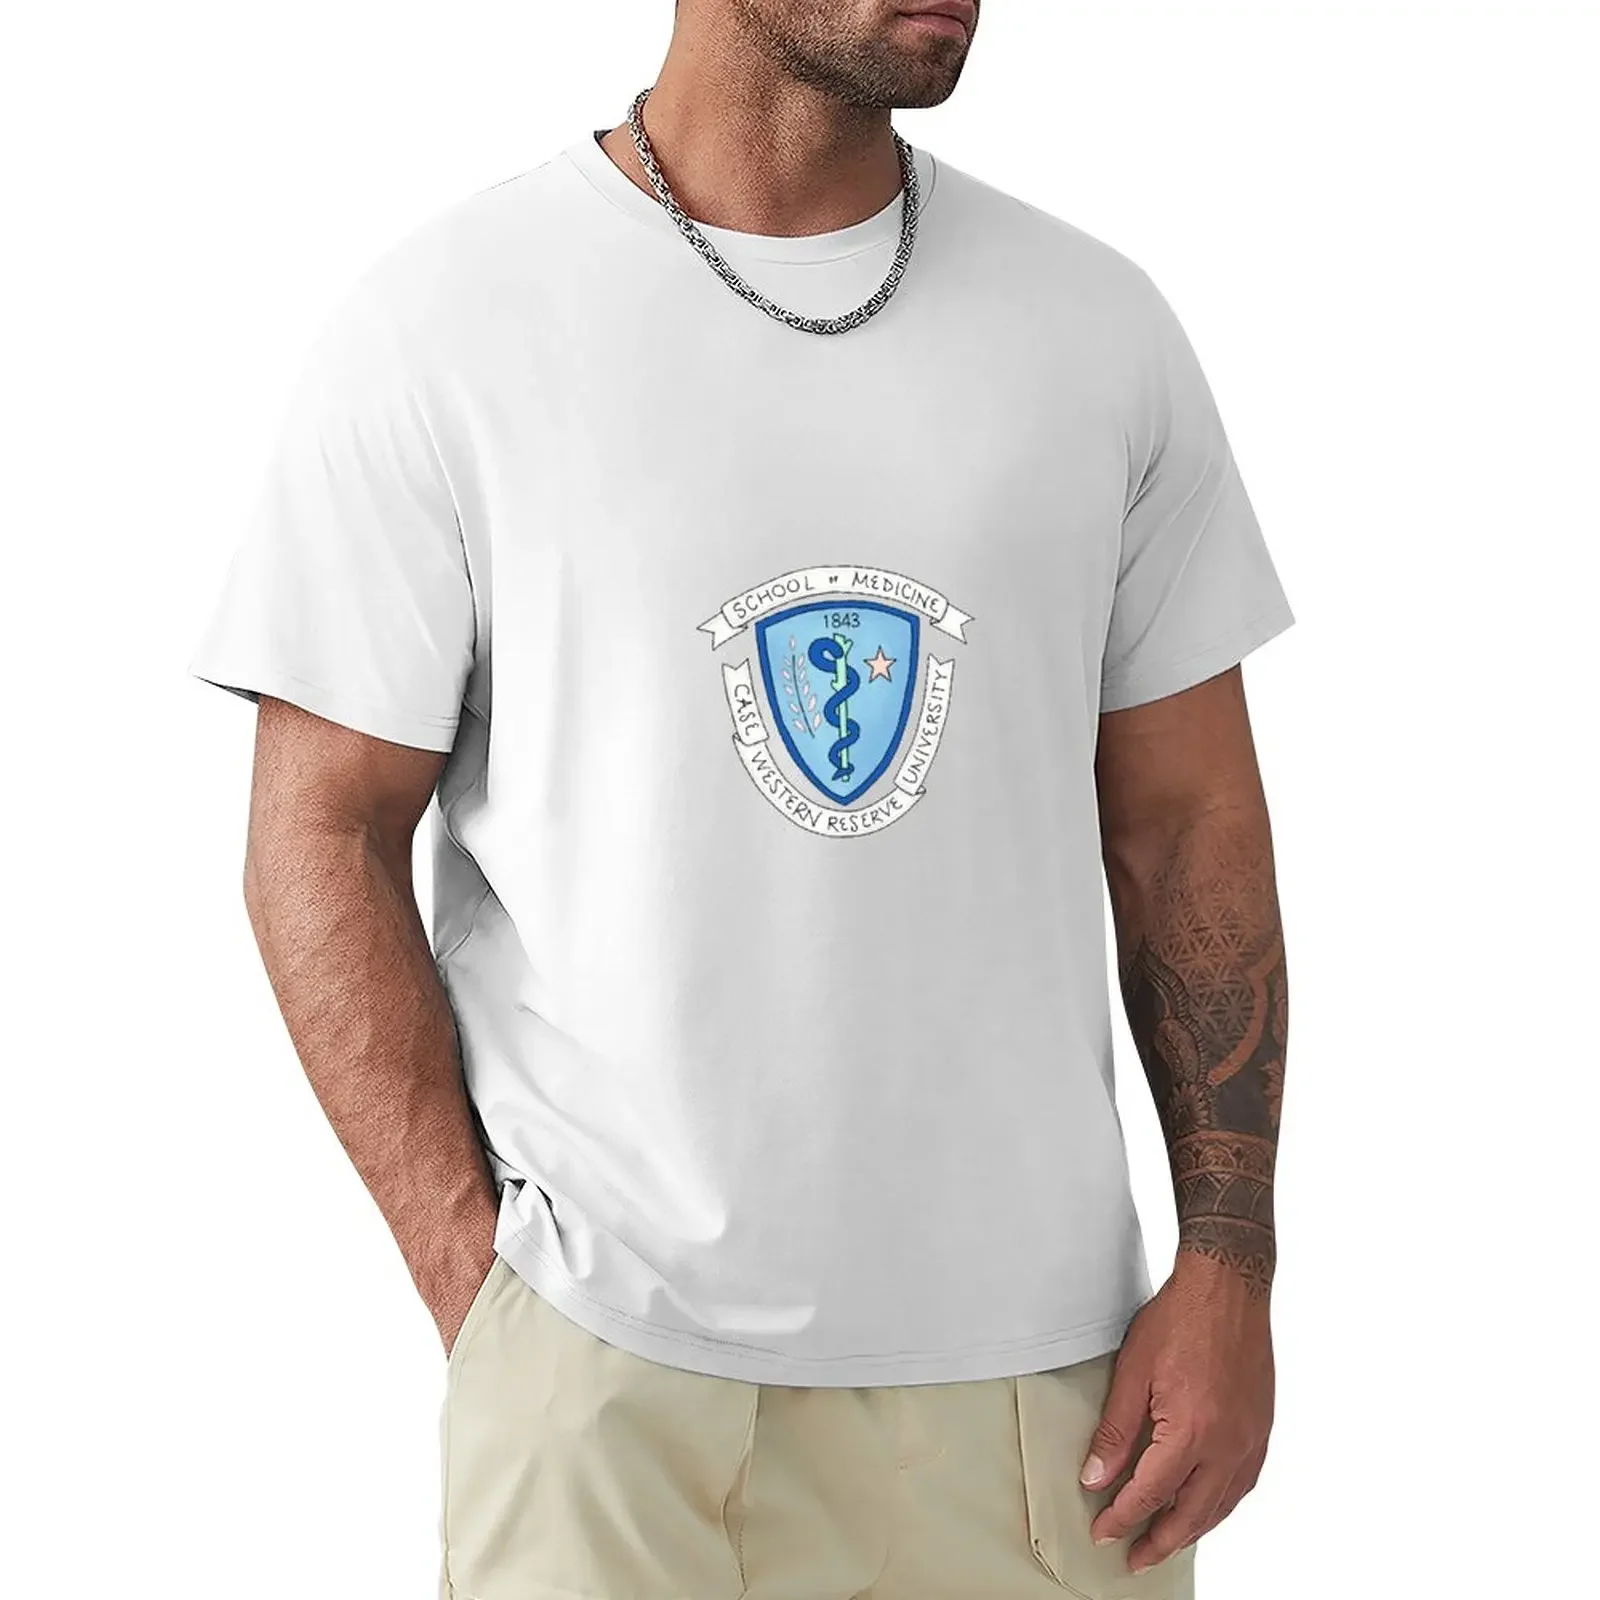 

CaseMed Crest Футболка с принтом животных для мальчиков традиционная винтажная Эстетическая одежда мужские футболки